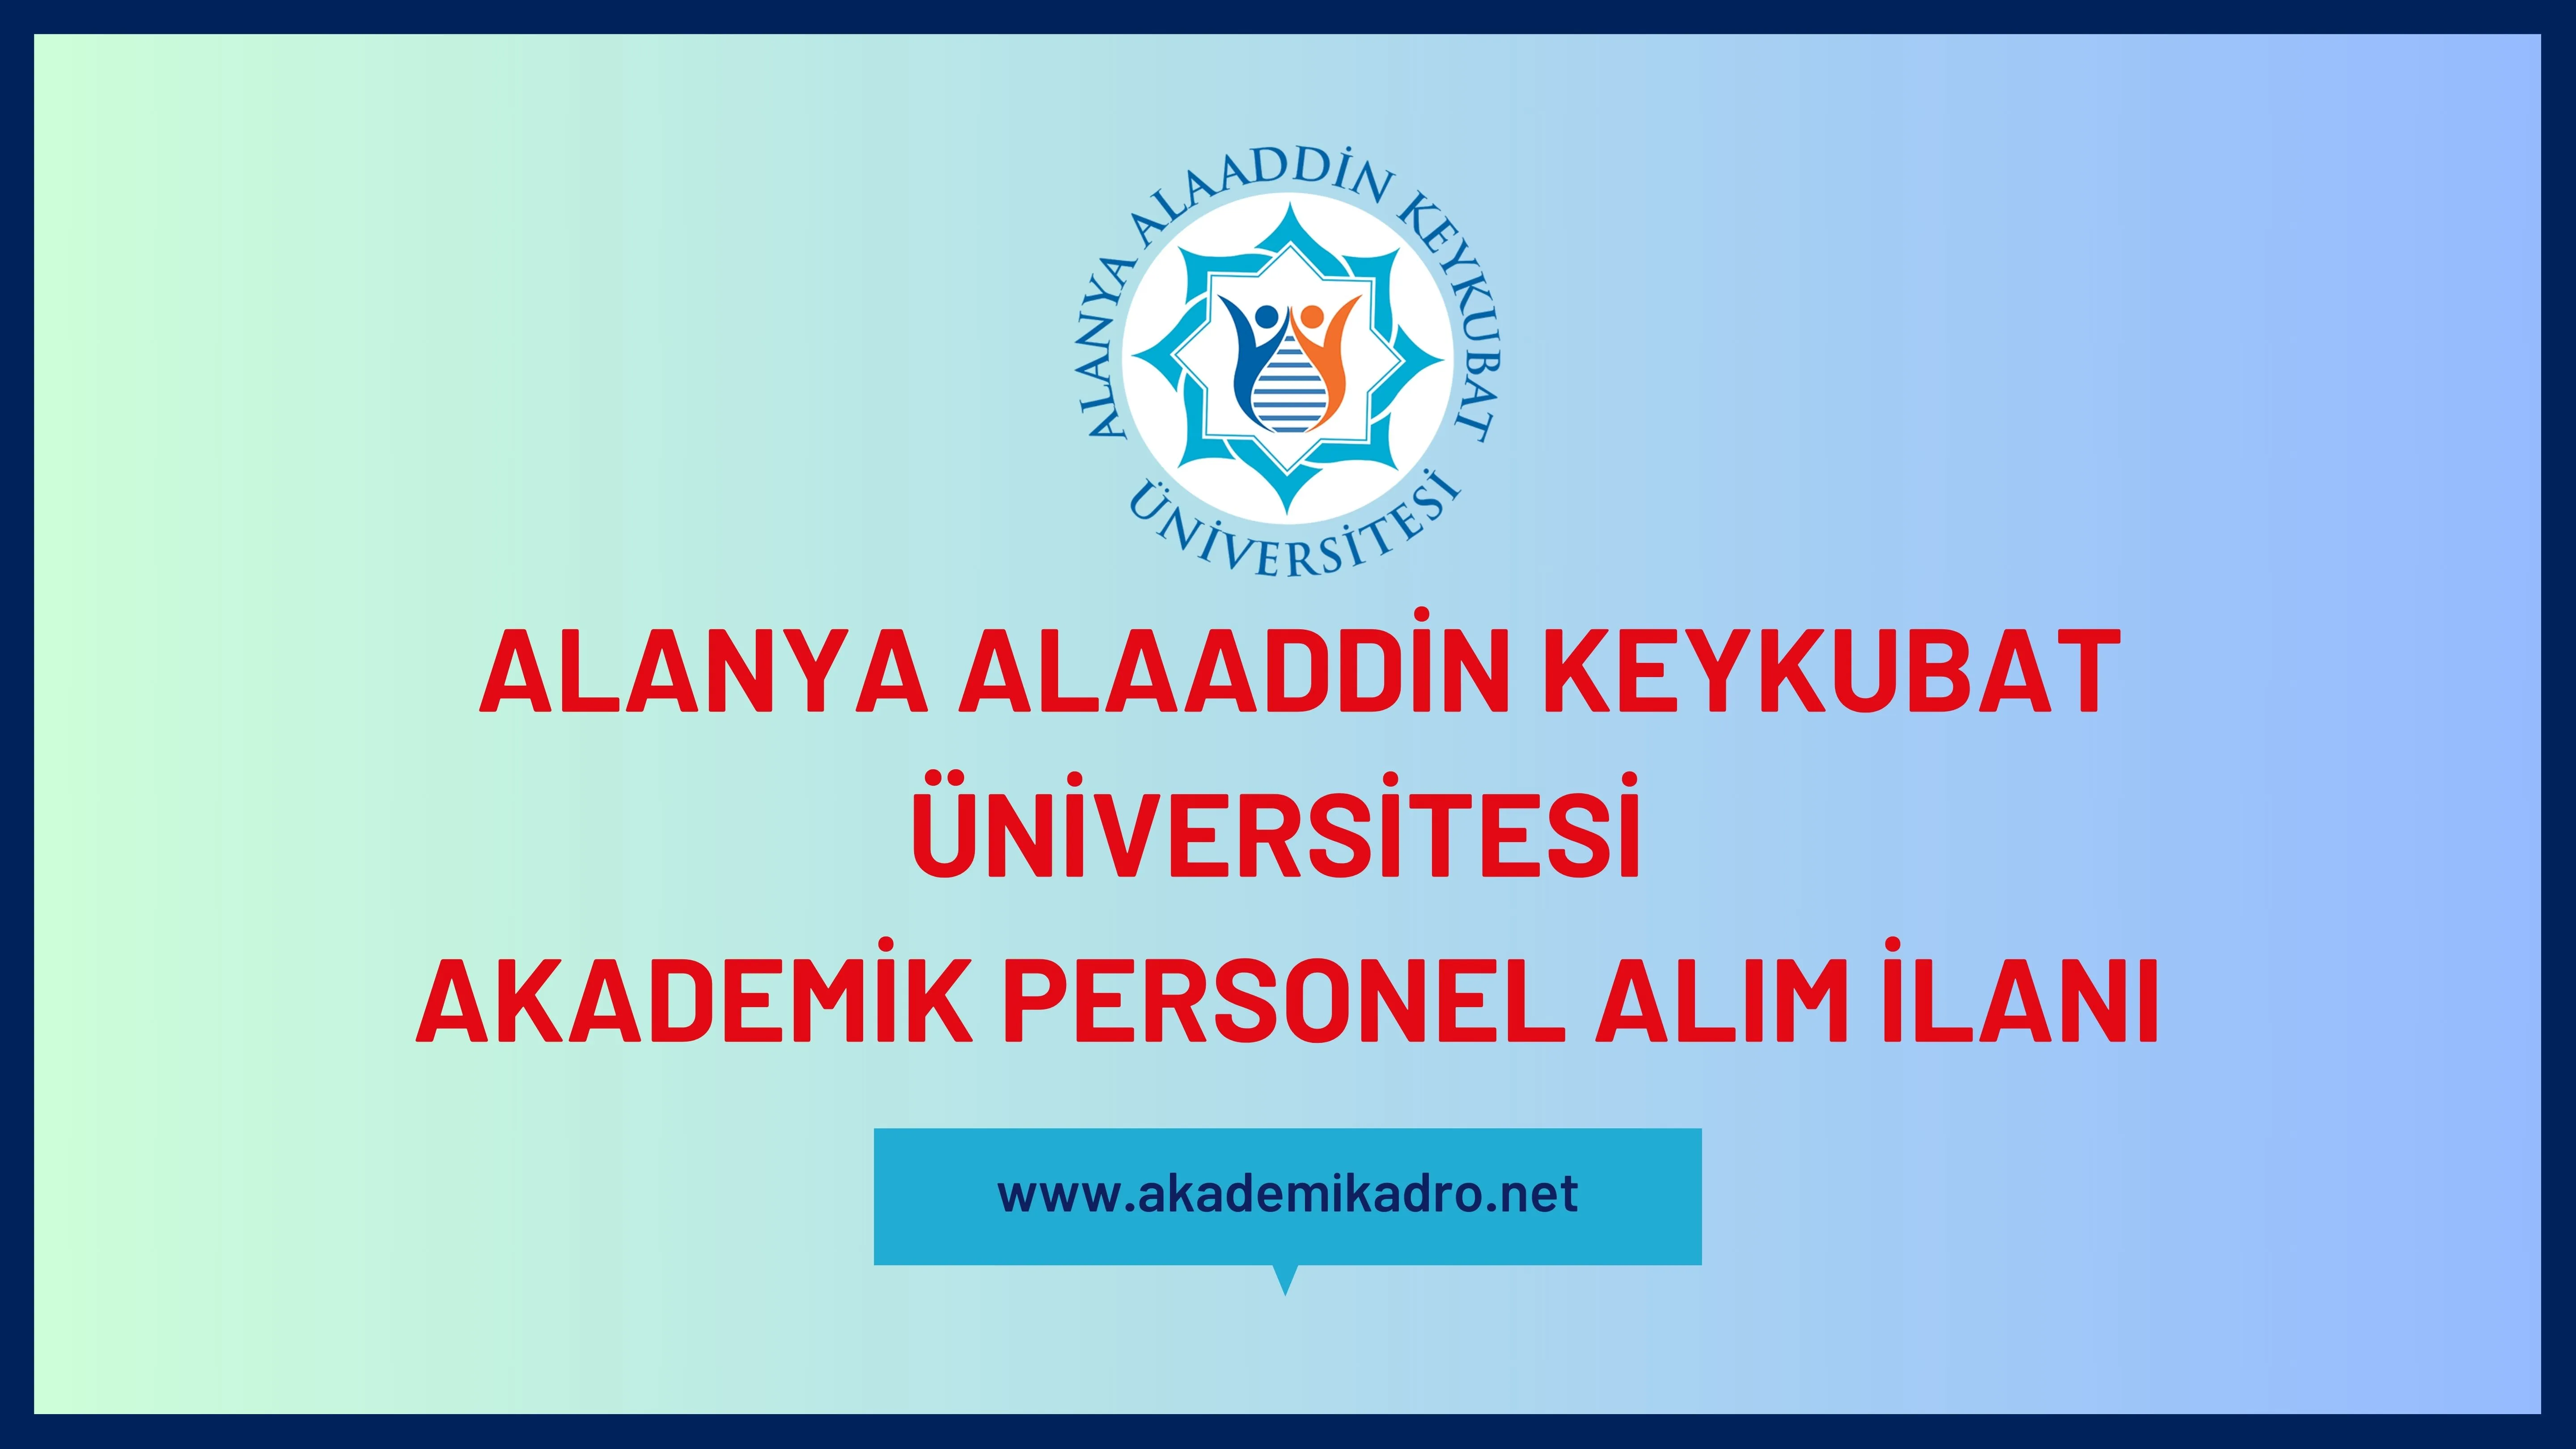 Alanya Alaaddin Keykubat Üniversitesi birçok alandan 15 akademik personel alacak.